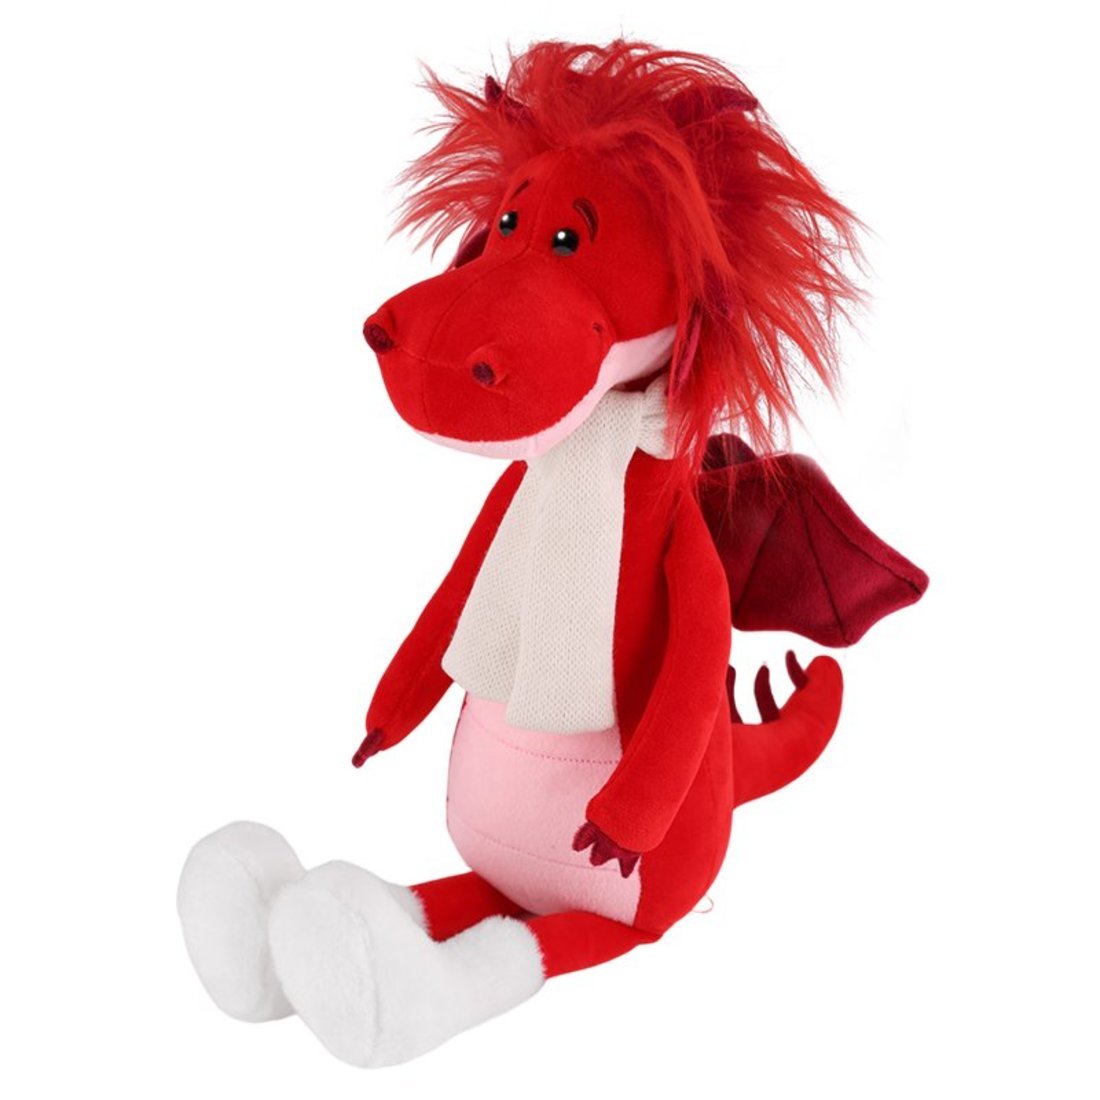 Мягкая игрушка Дракон Руби в шарфике и валенках, 30 см